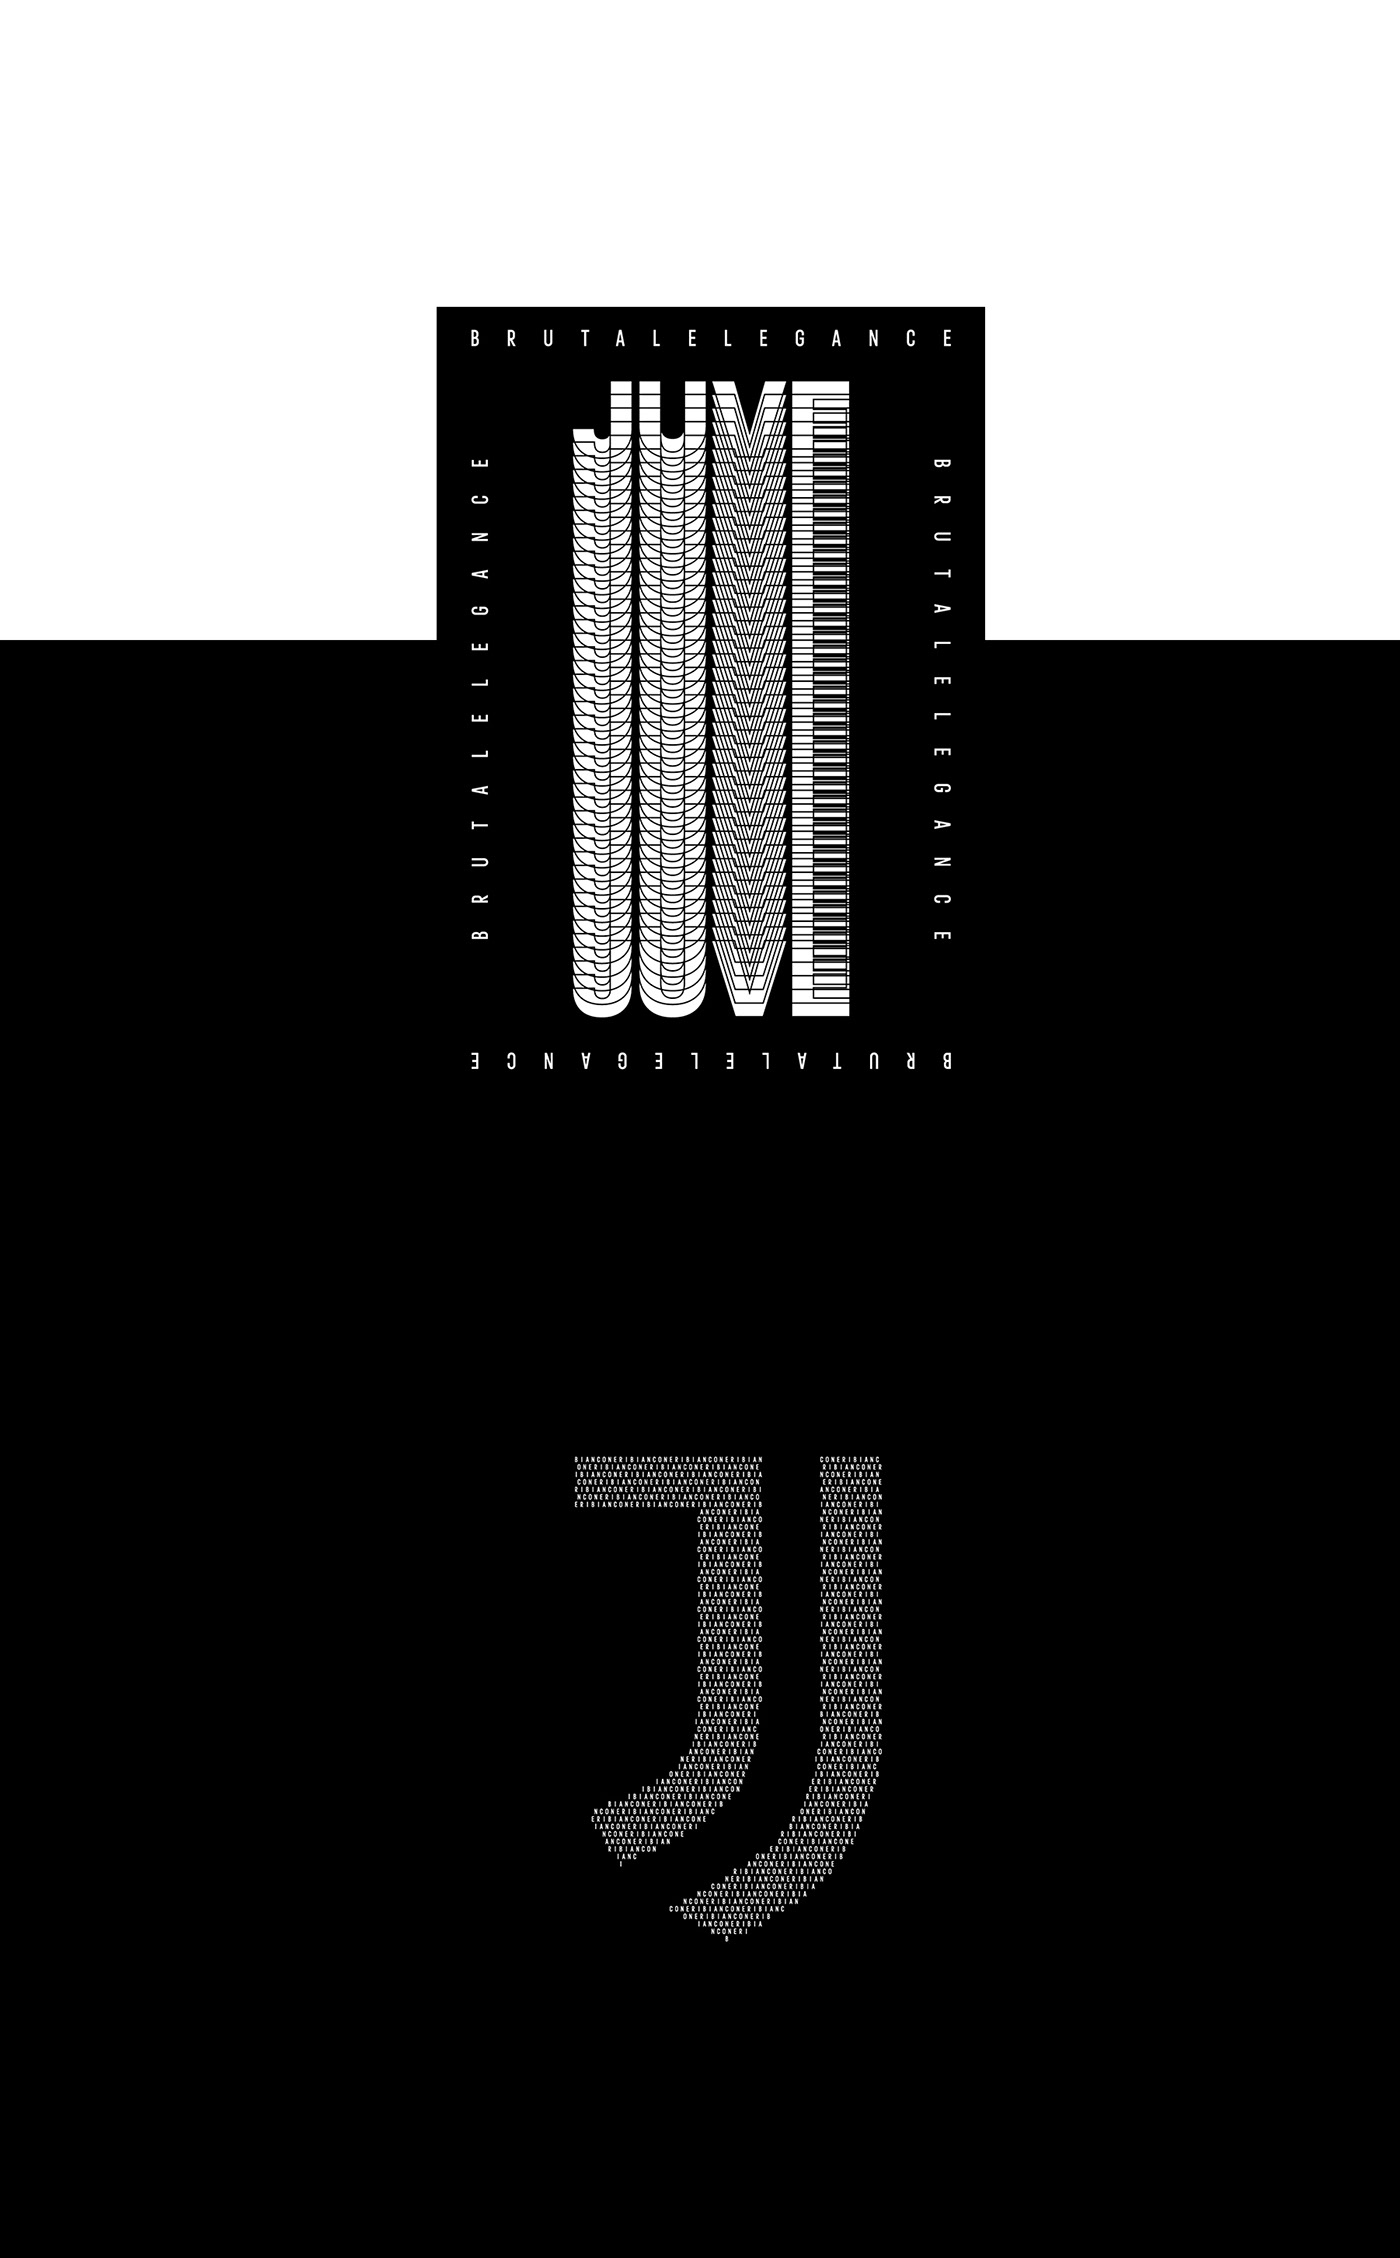 adidas football Juventus sport Players calcio DYBALA jersey Photography  poster